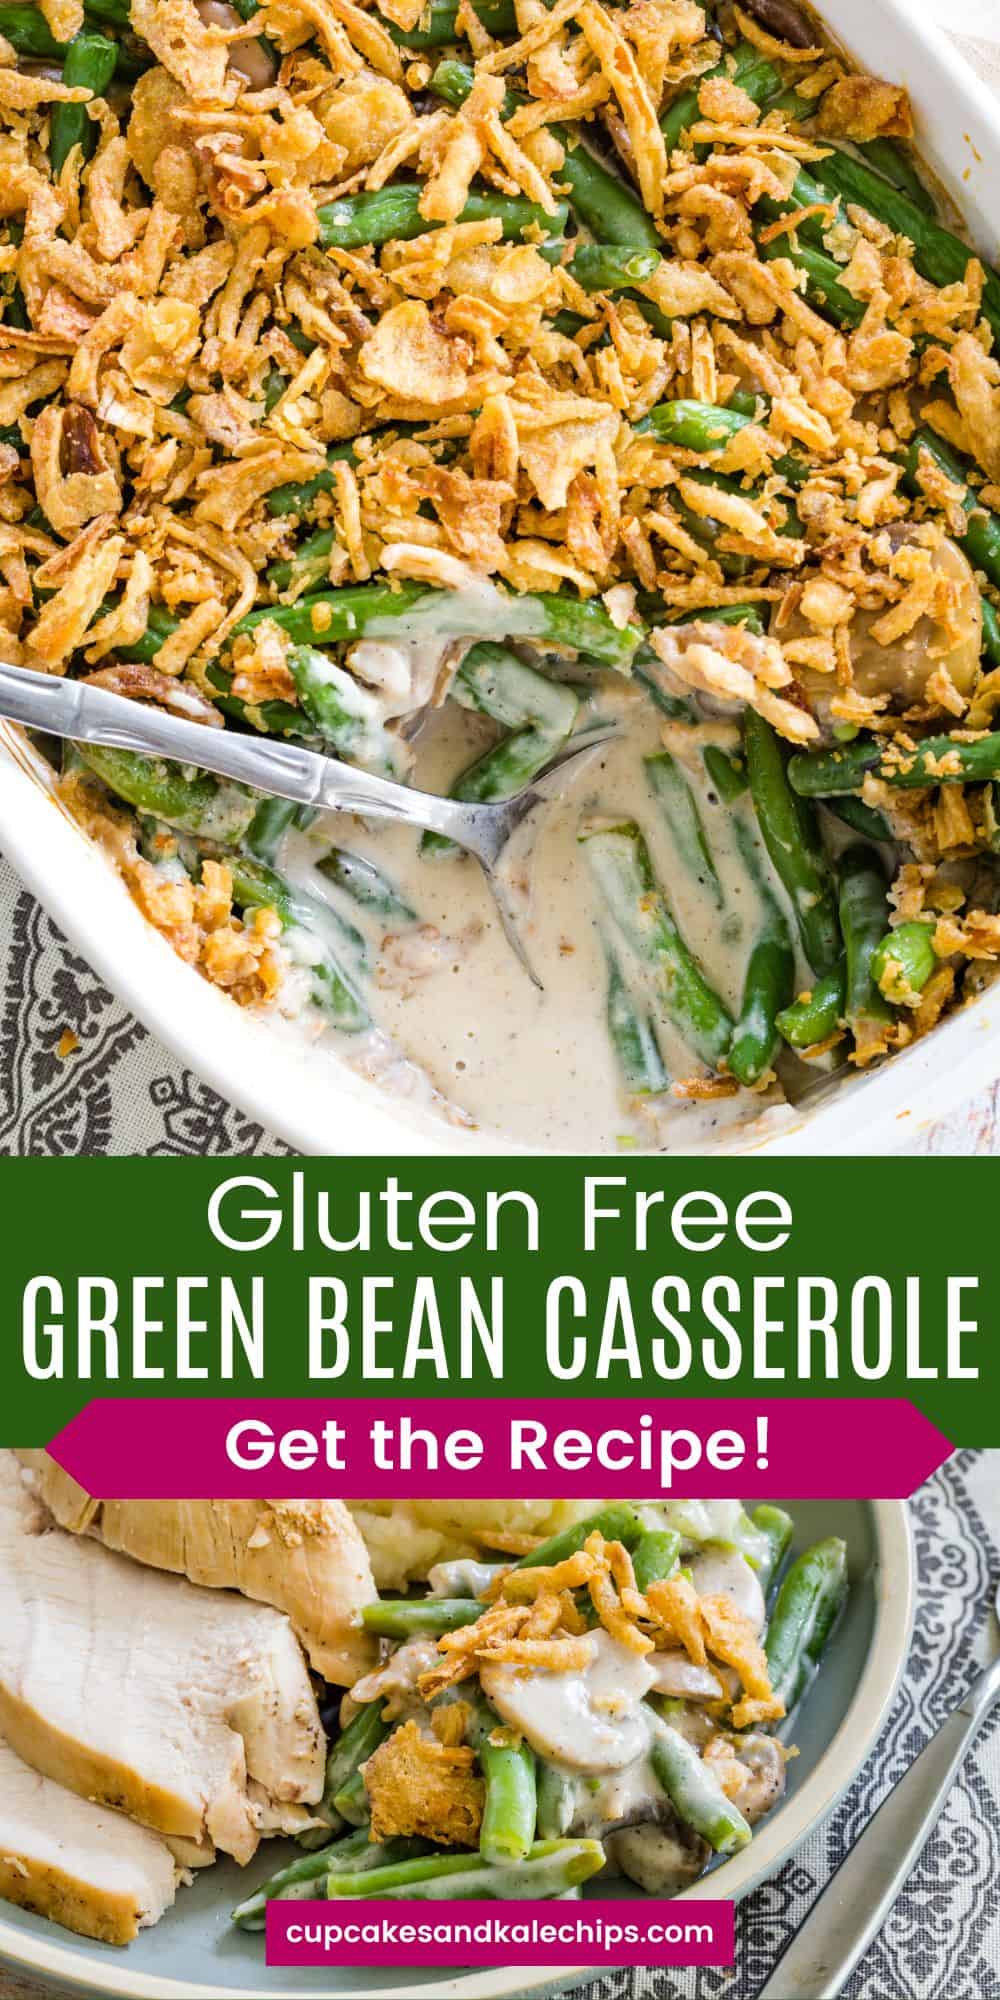 Gluten Free Green Bean Casserole | Cupcakes & Kale Chips